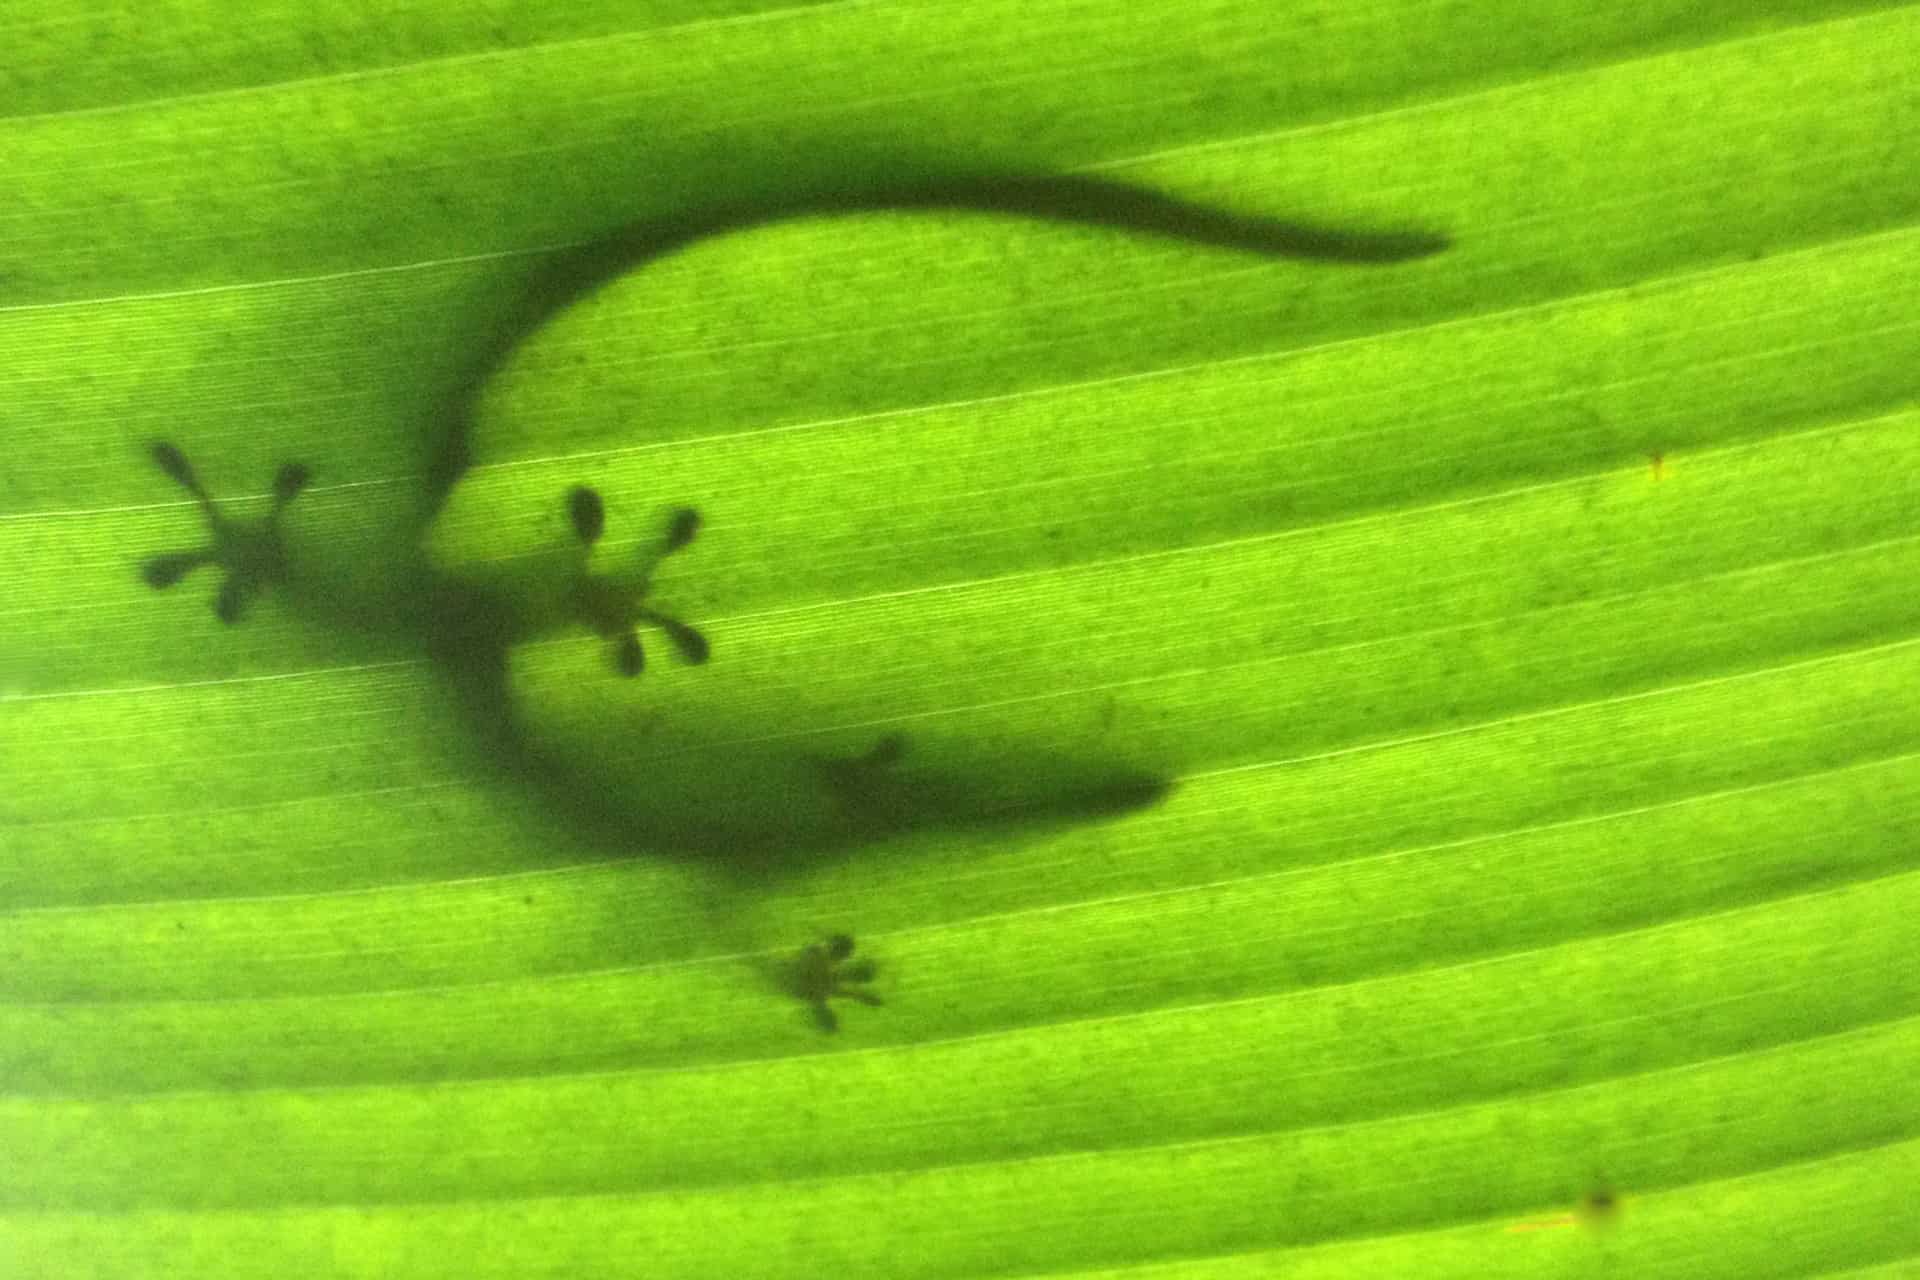 Gecko on a banana leaf